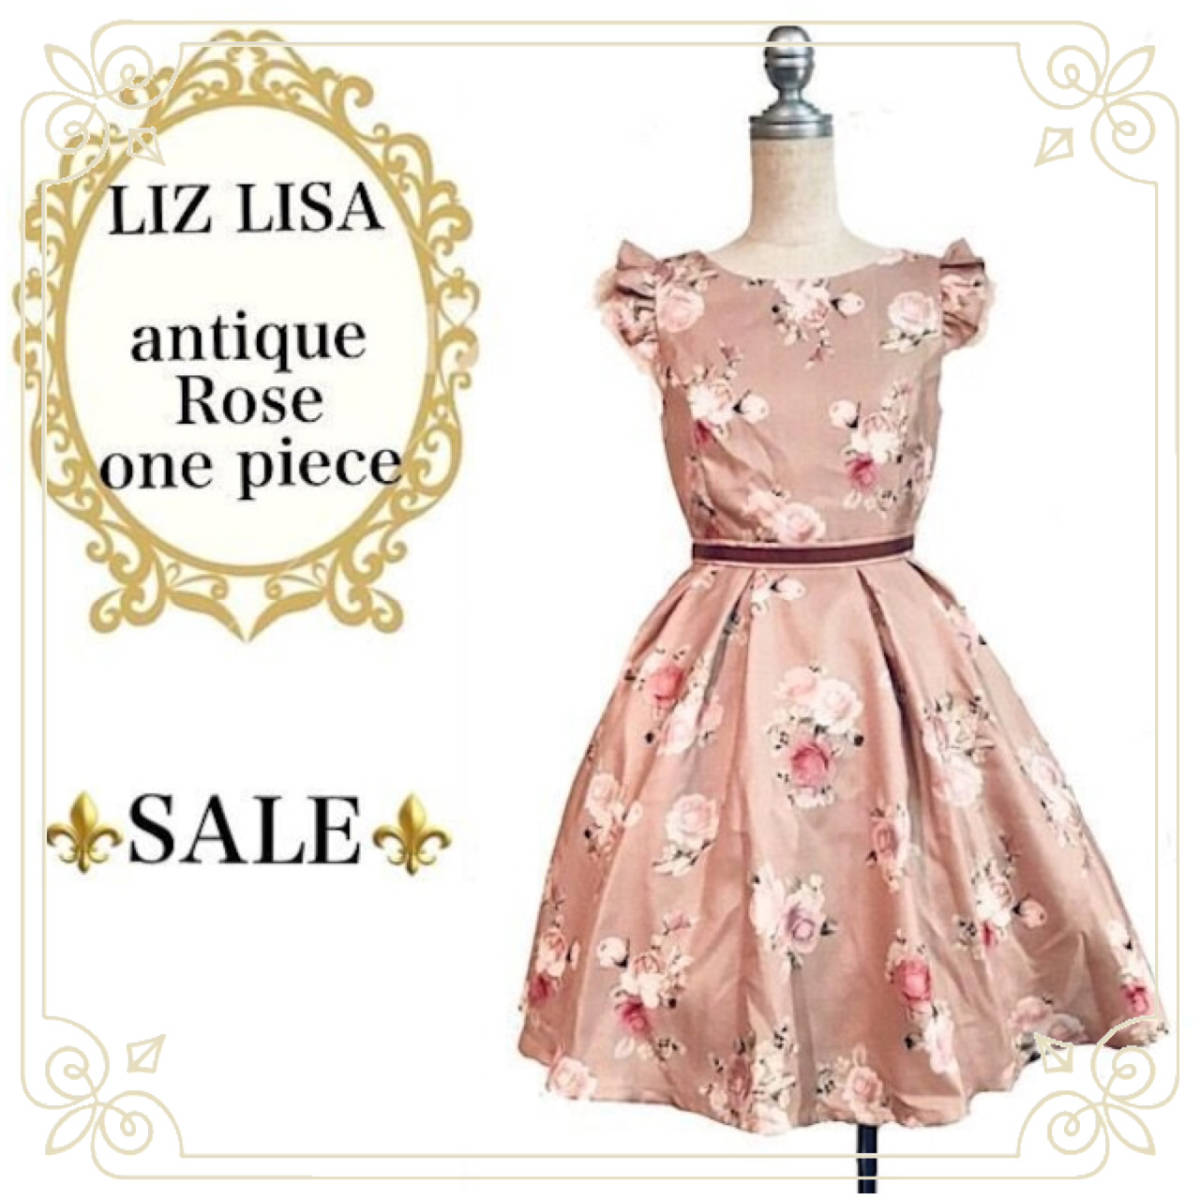 即決 新品 セール品 LIZ LISA アンティーク風 薔薇柄ワンピース (ブラウン) ガーリー ロリータ クラシカル